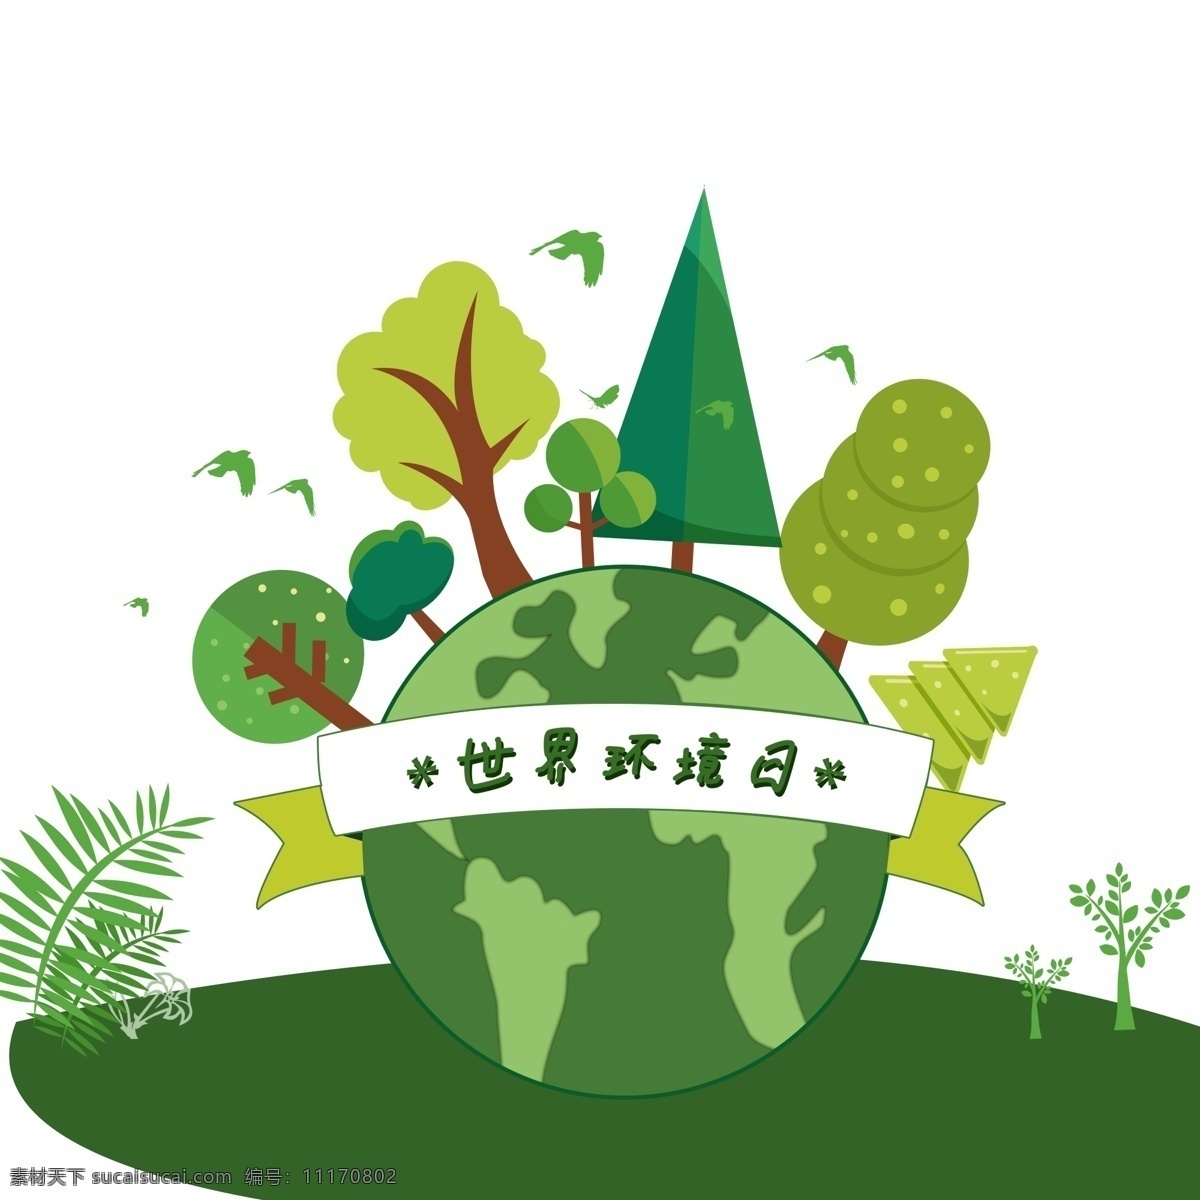 世界环境日 主题 图案 地球 保护环境 绿叶 绿色图案 树林 保护地球 手绘 元素设计 简约 创意元素 手绘元素 psd元素 免扣元素